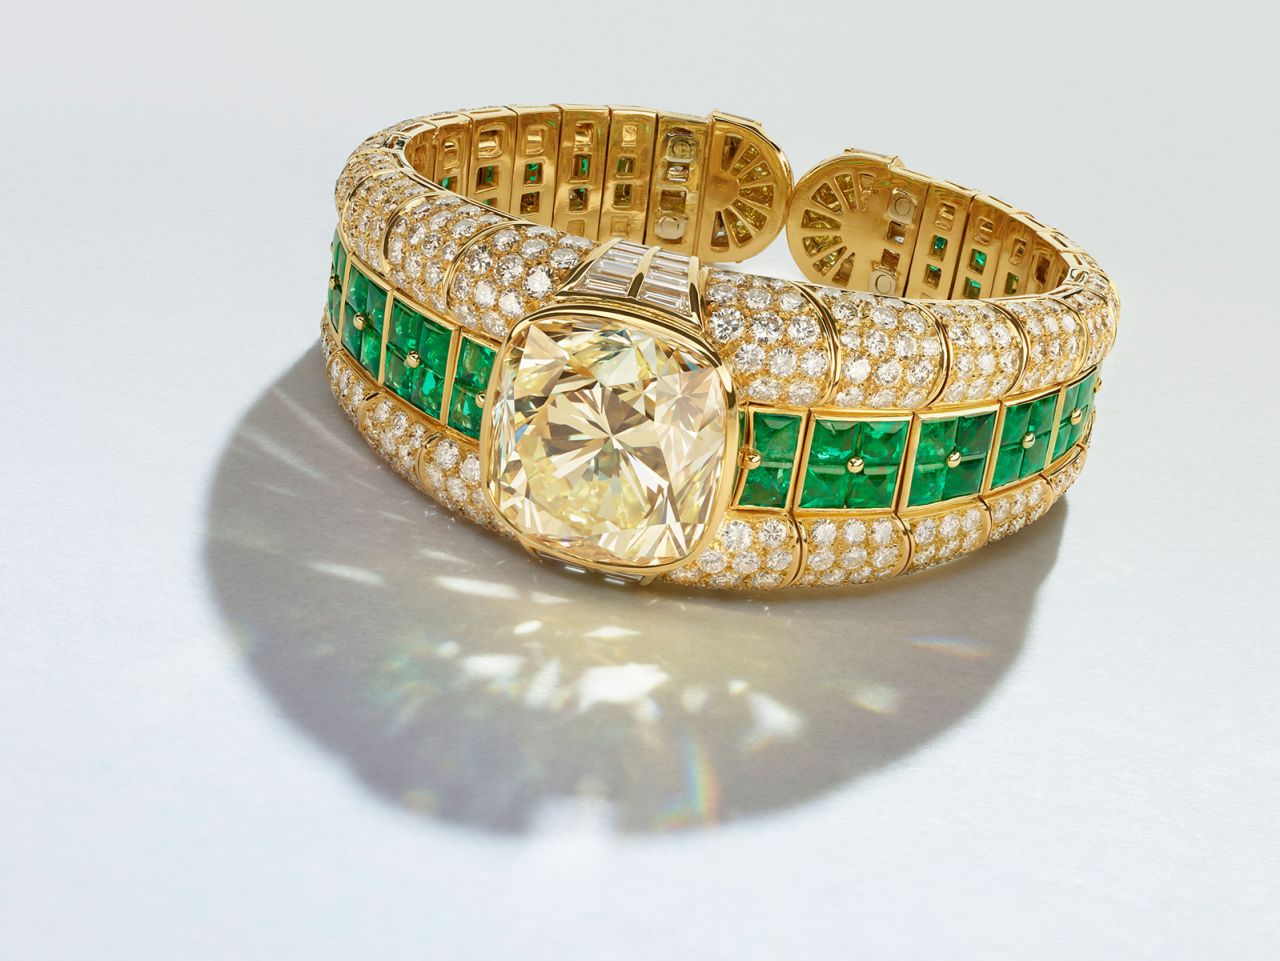 A Bulgari diamond and emerald bangle was among 700 jewels on sale.